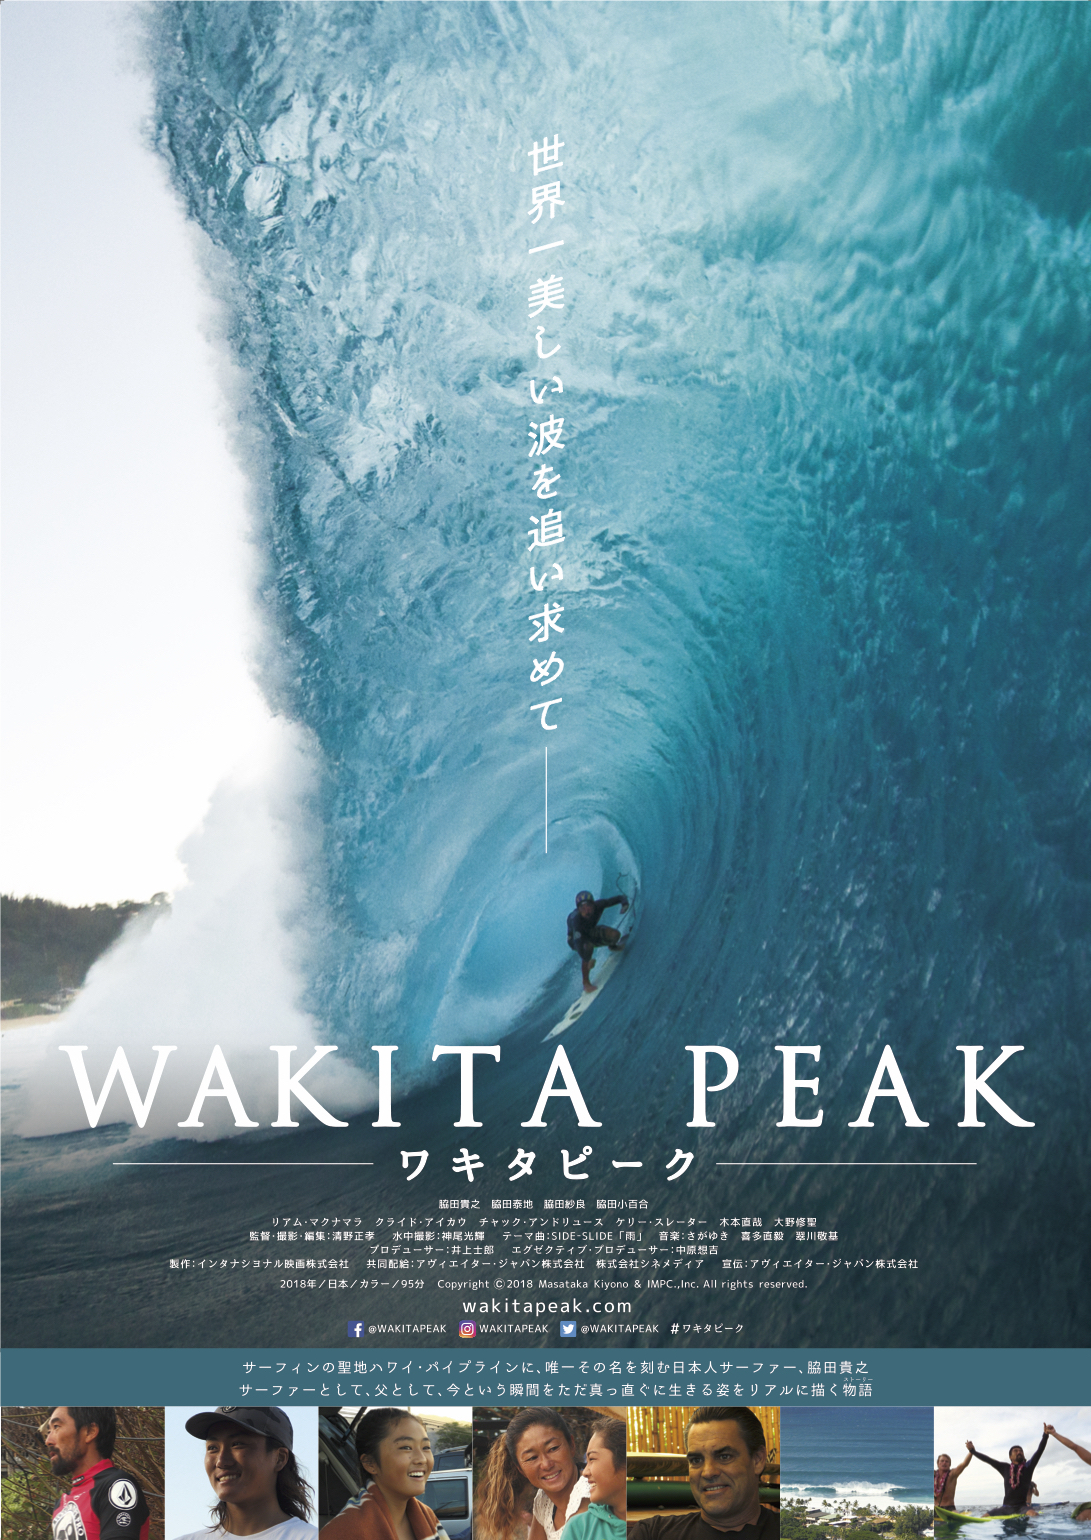 6 8 金 より全国順次公開 映画 Wakita Peak パイプラインに名を刻むサーファー脇田貴之を描く The Surf News サーフニュース